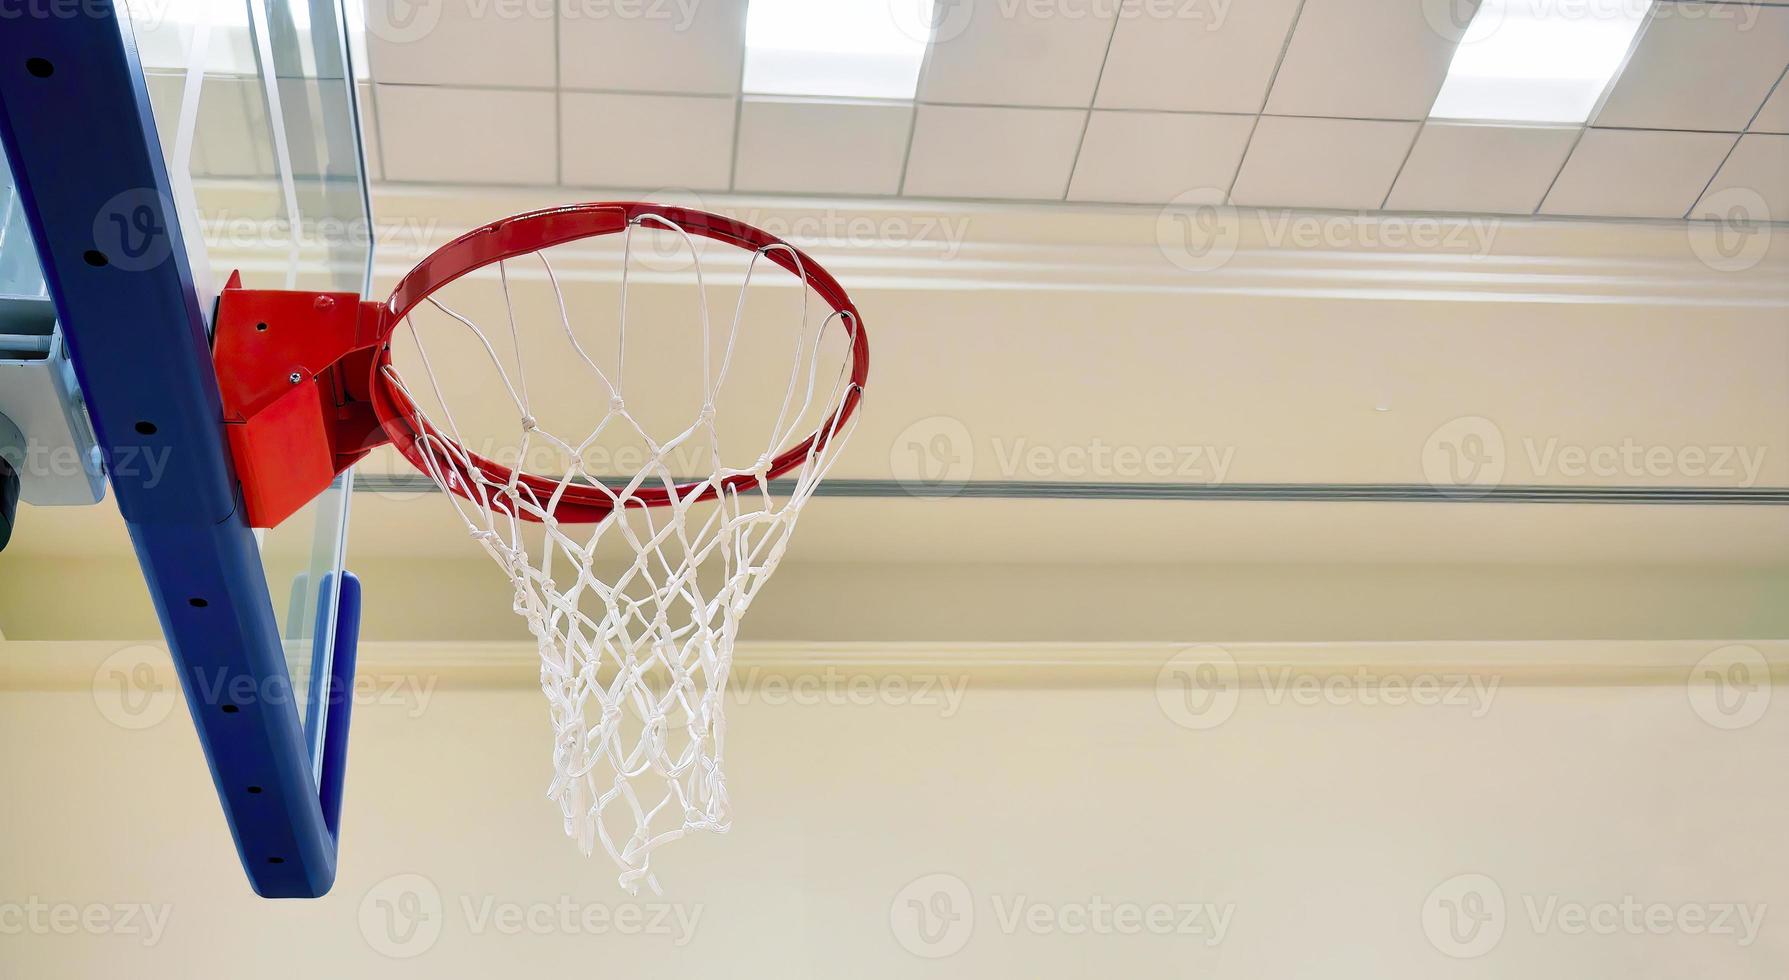 stänga upp inomhus- Gym basketboll ring och ryggstöd, artificiell belysning foto